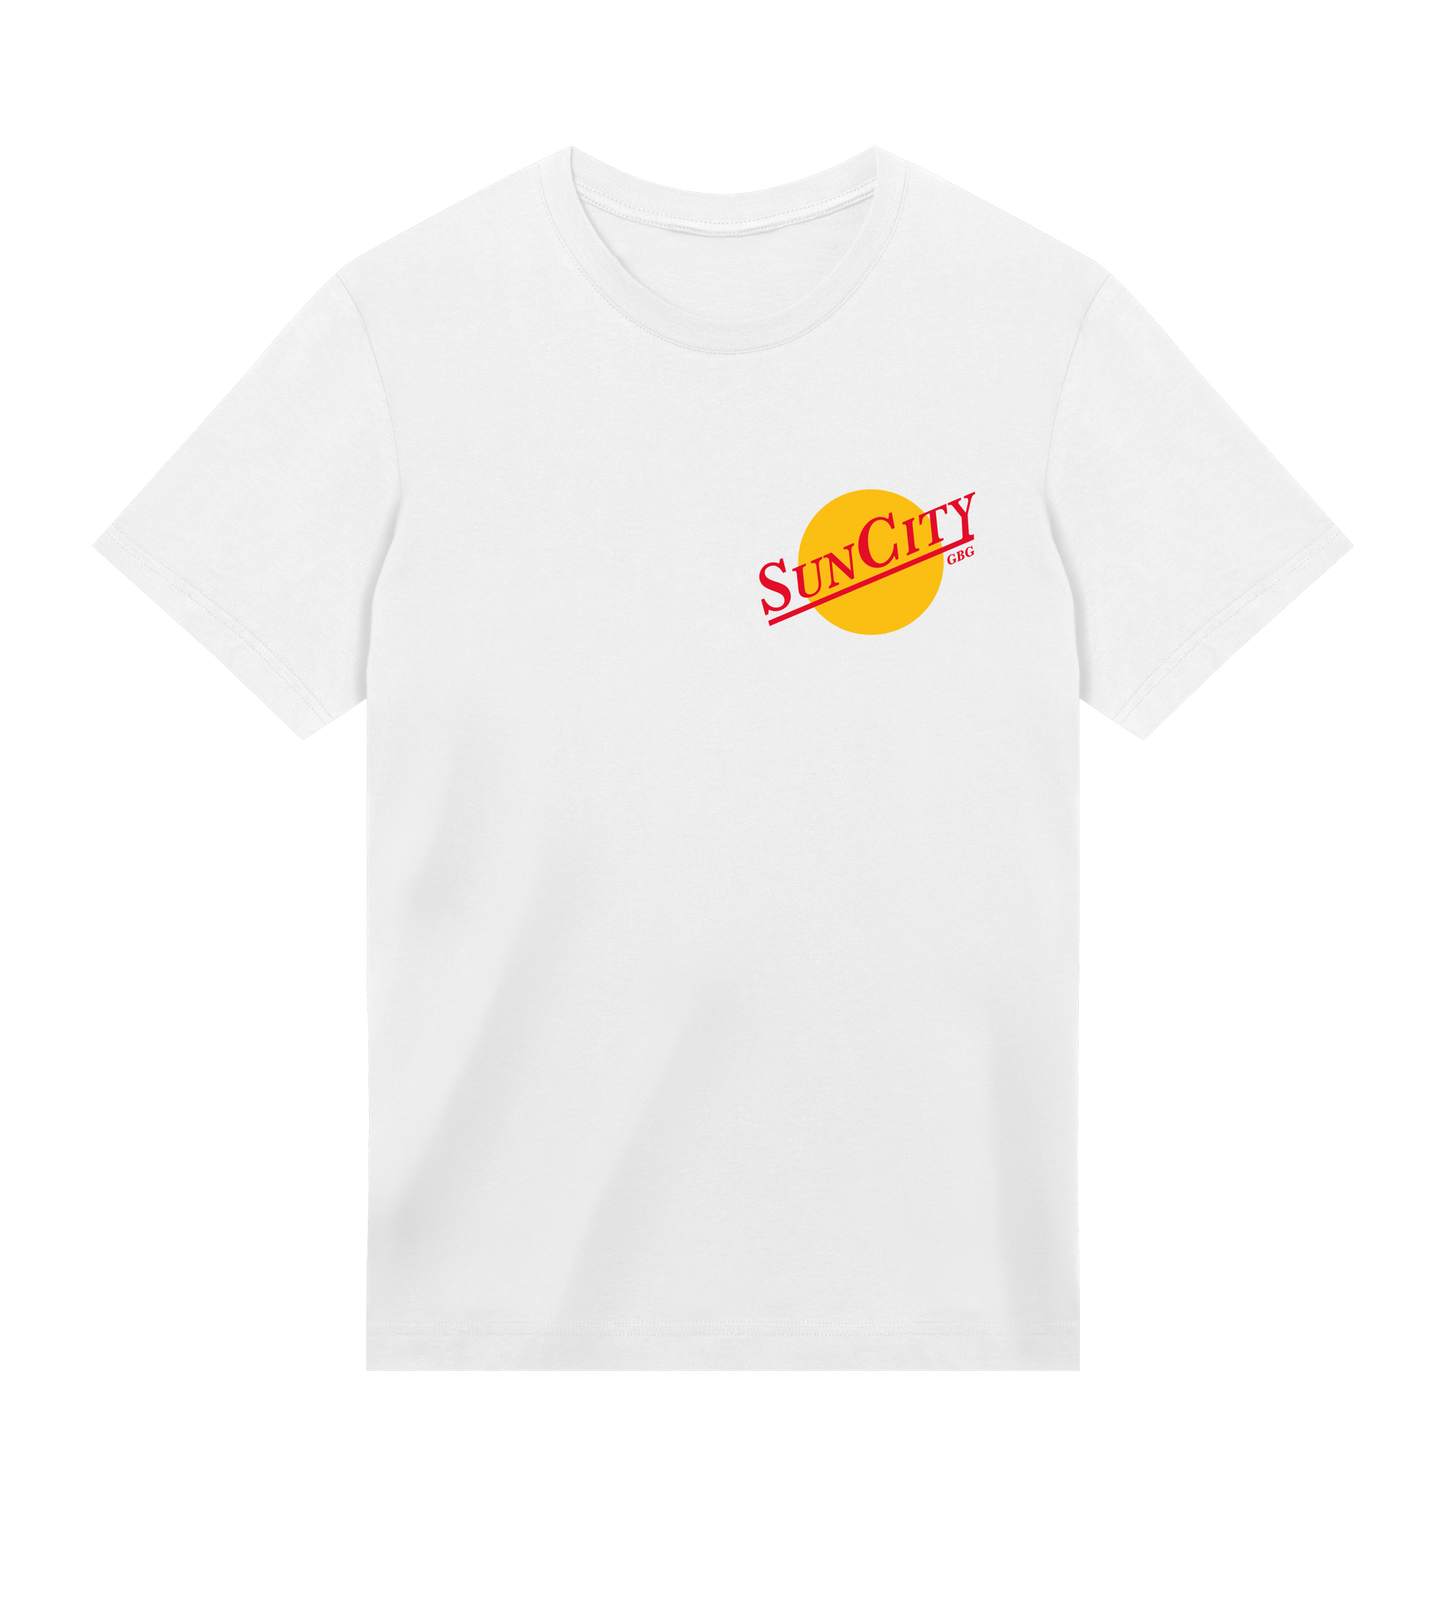 Sun City GBG Summer logo t-shirt